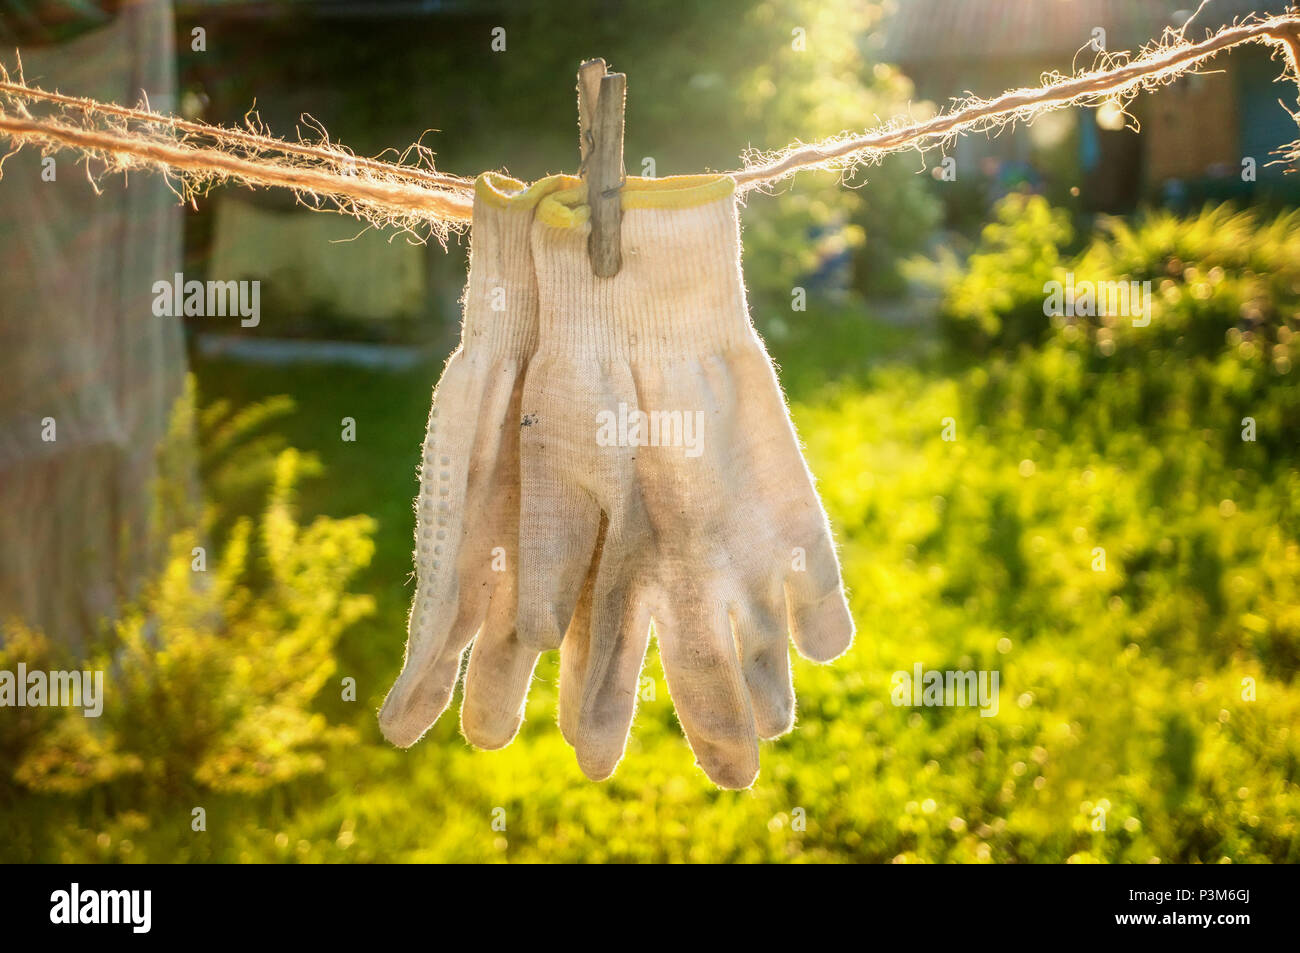 Alte textile Handschuhe sind auf das Garn nach dem Waschen getrocknet. Handschutz. Stockfoto